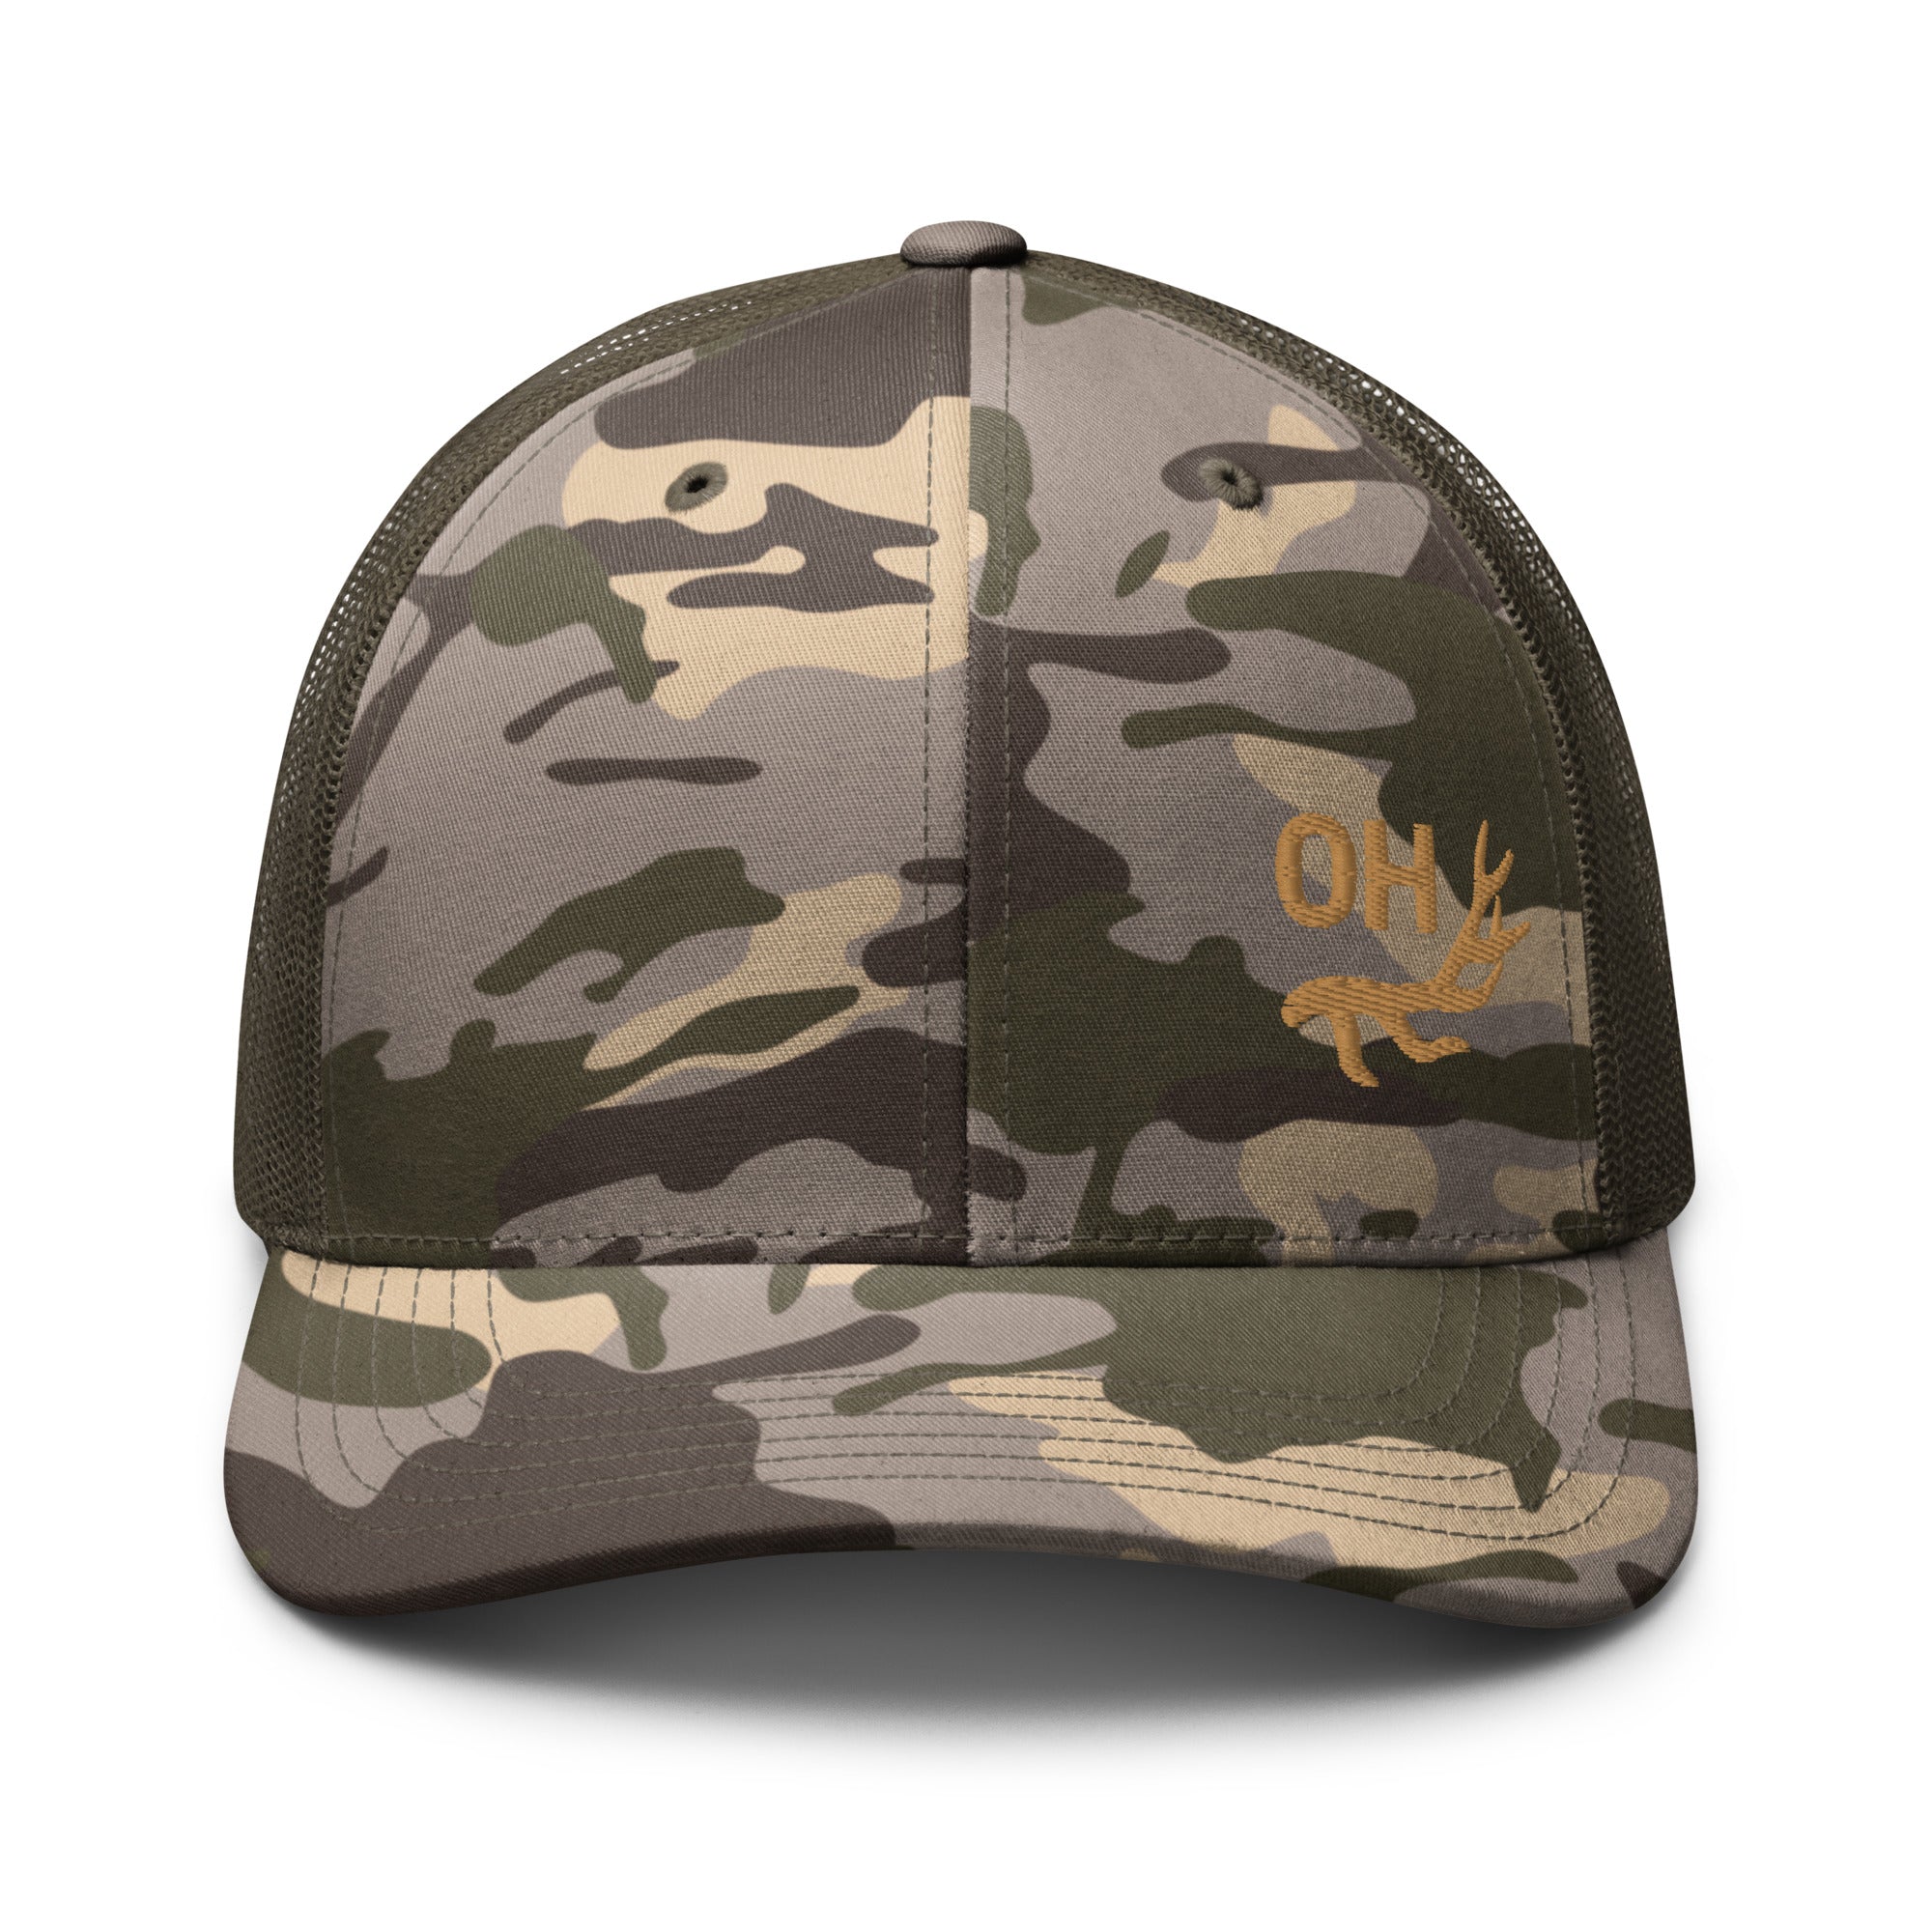 camouflage-trucker-hat-camo-olive-front-655e6390e612e.jpg